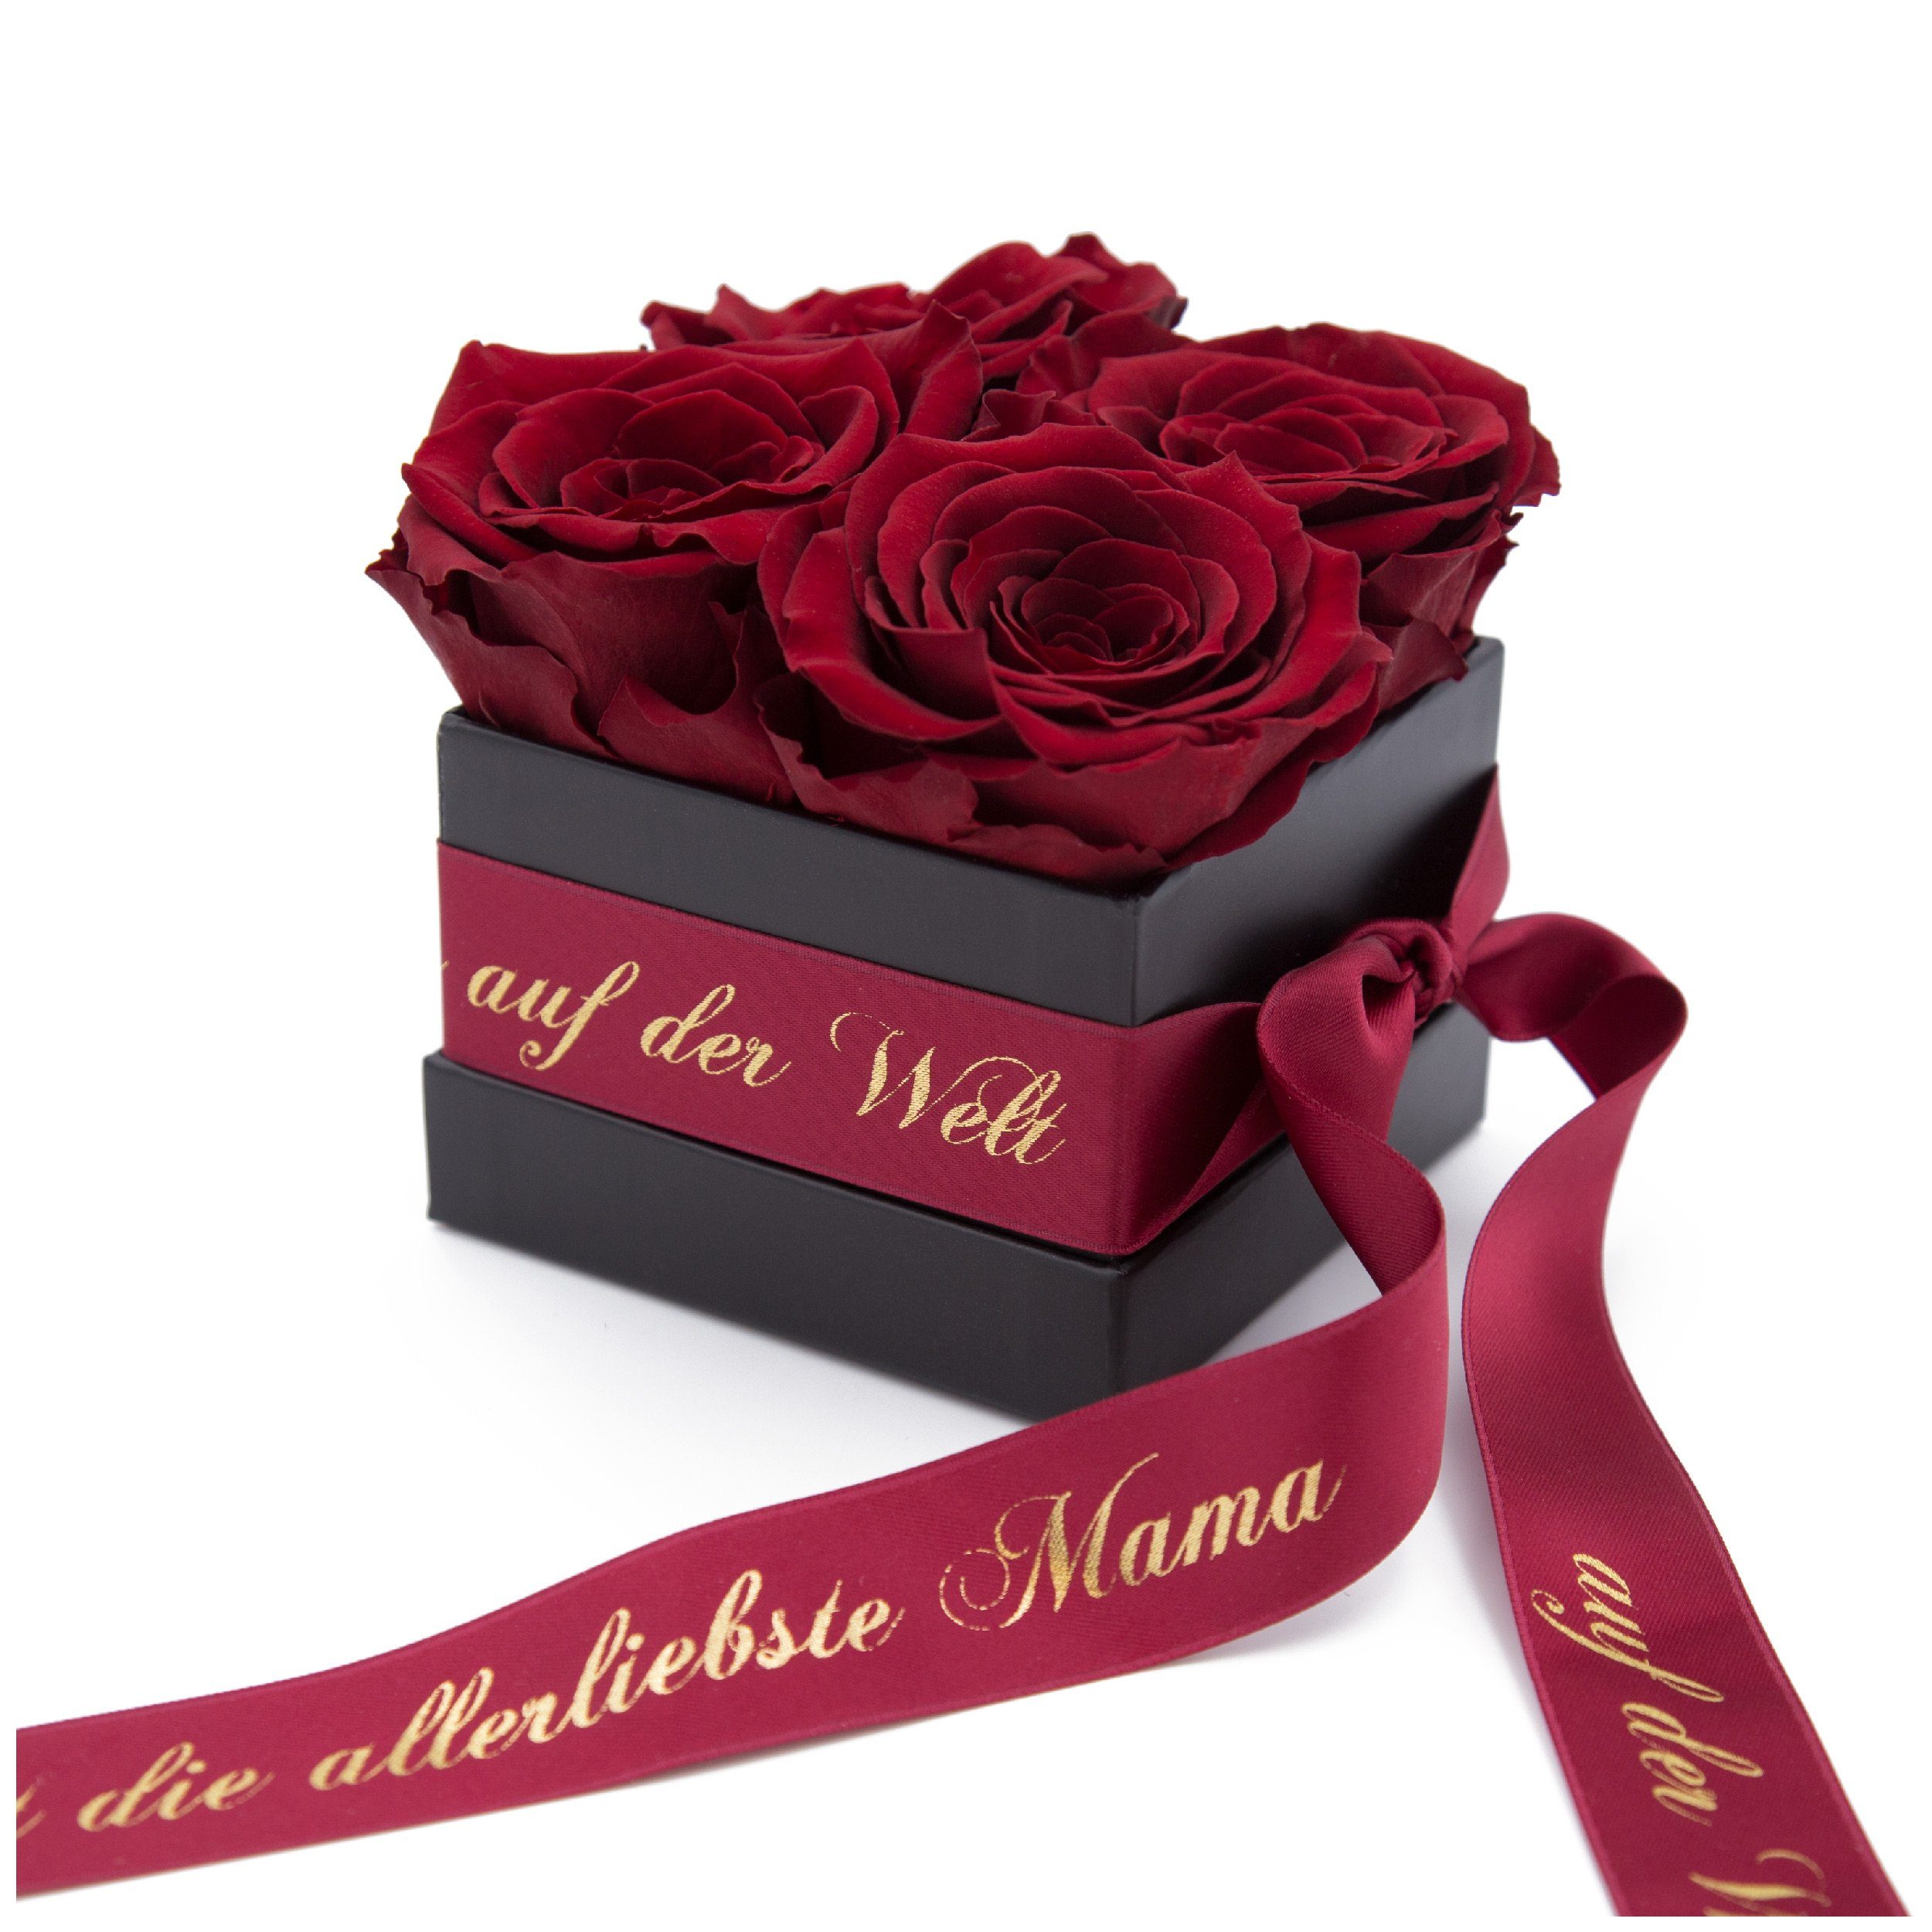 Kunstblume »Allerliebste Mama auf der Welt Rosenbox 4 konservierte Rosen  haltbar bis zu 3 Jahre« Rose, ROSEMARIE SCHULZ Heidelberg, Höhe 8,5 cm,  Echte Rosen haltbar 3 Jahre online kaufen | OTTO